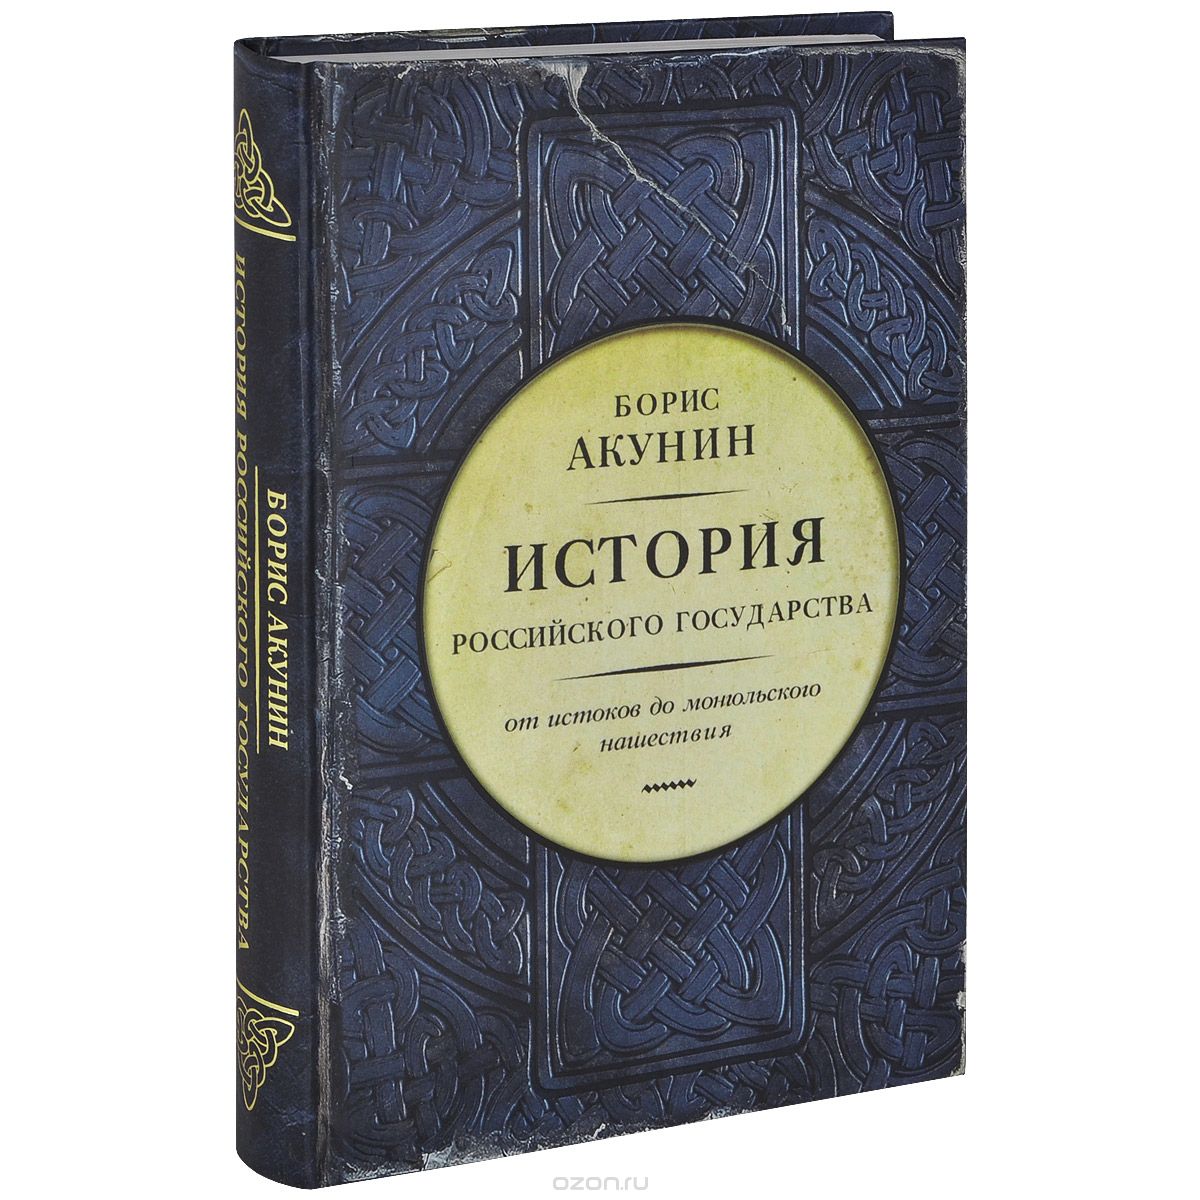 Скачать книгу "История Российского государства. От истоков до монгольского нашествия, Борис Акунин"